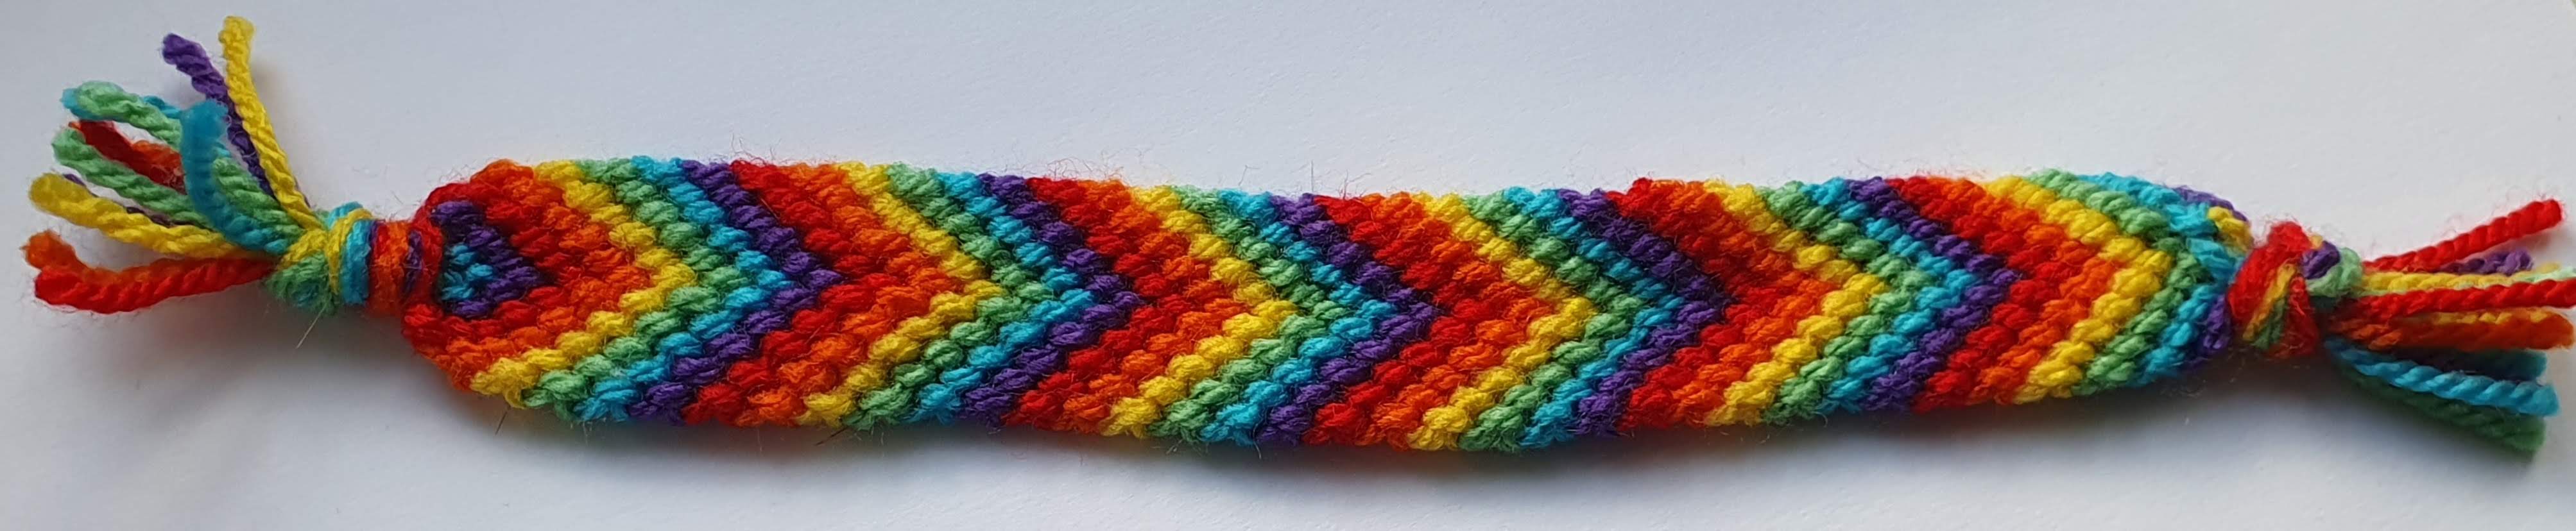 Bracelet with rainbow chevrons